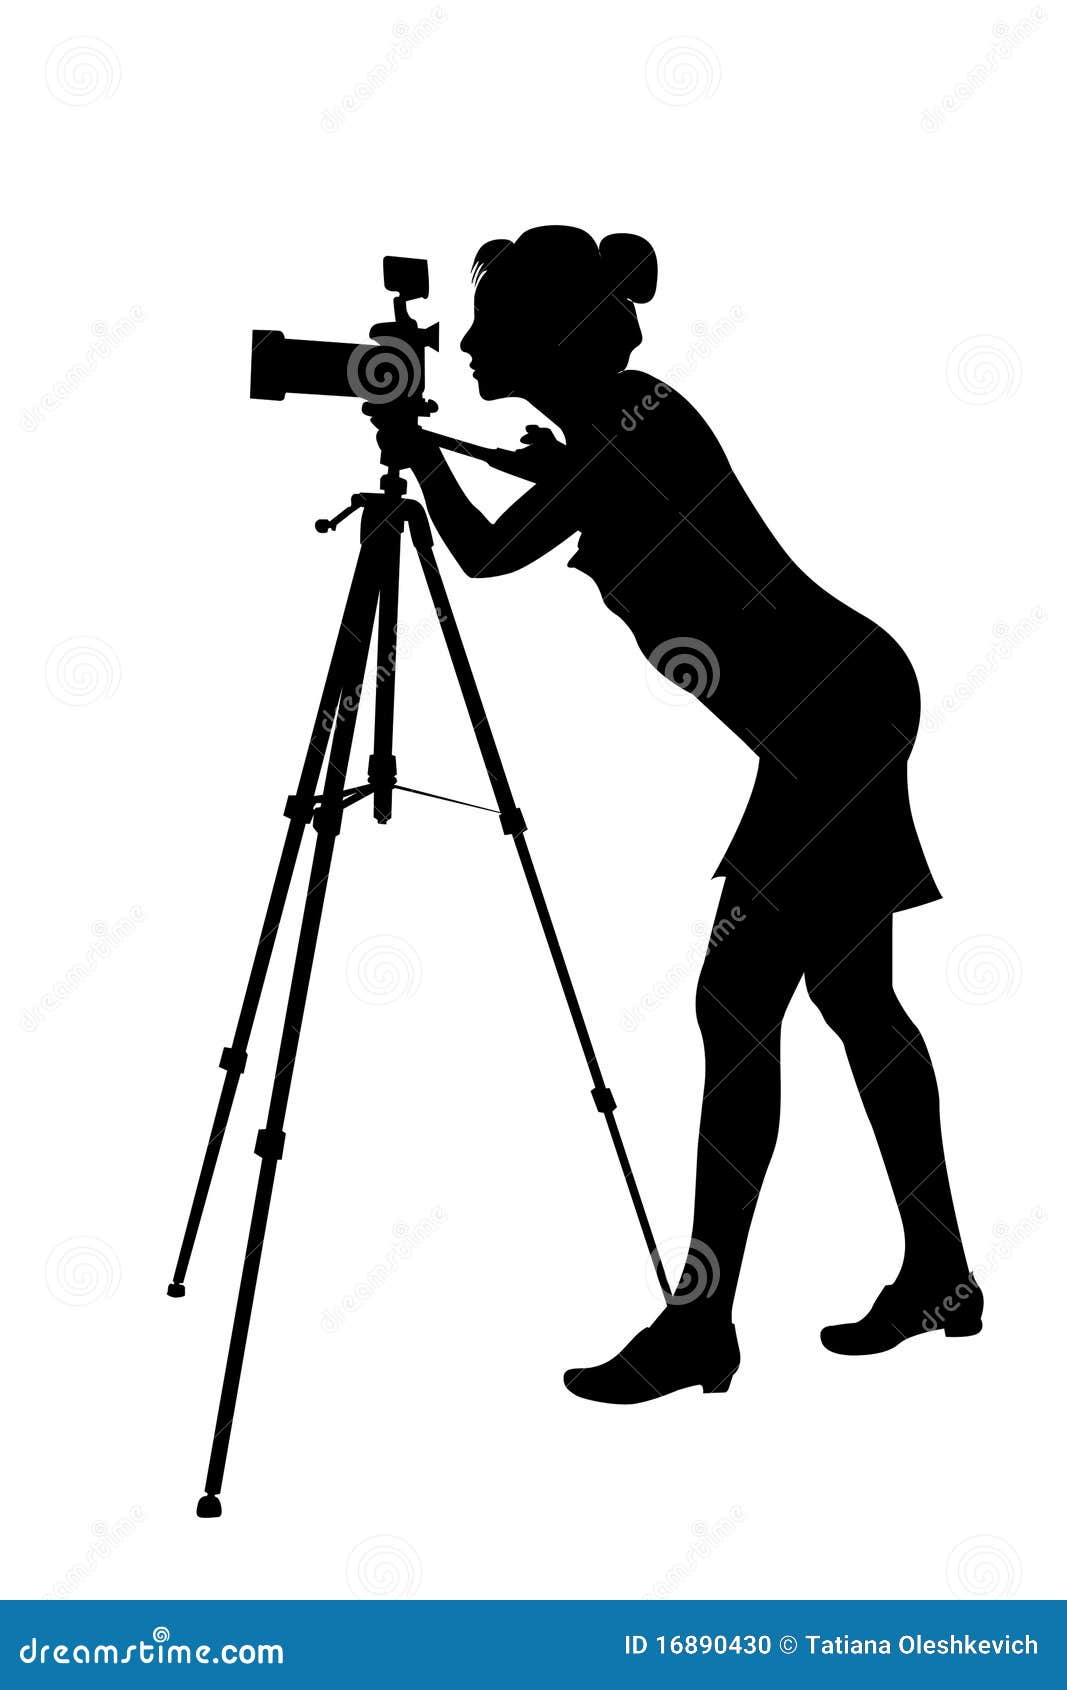 camera lady clip art - photo #29